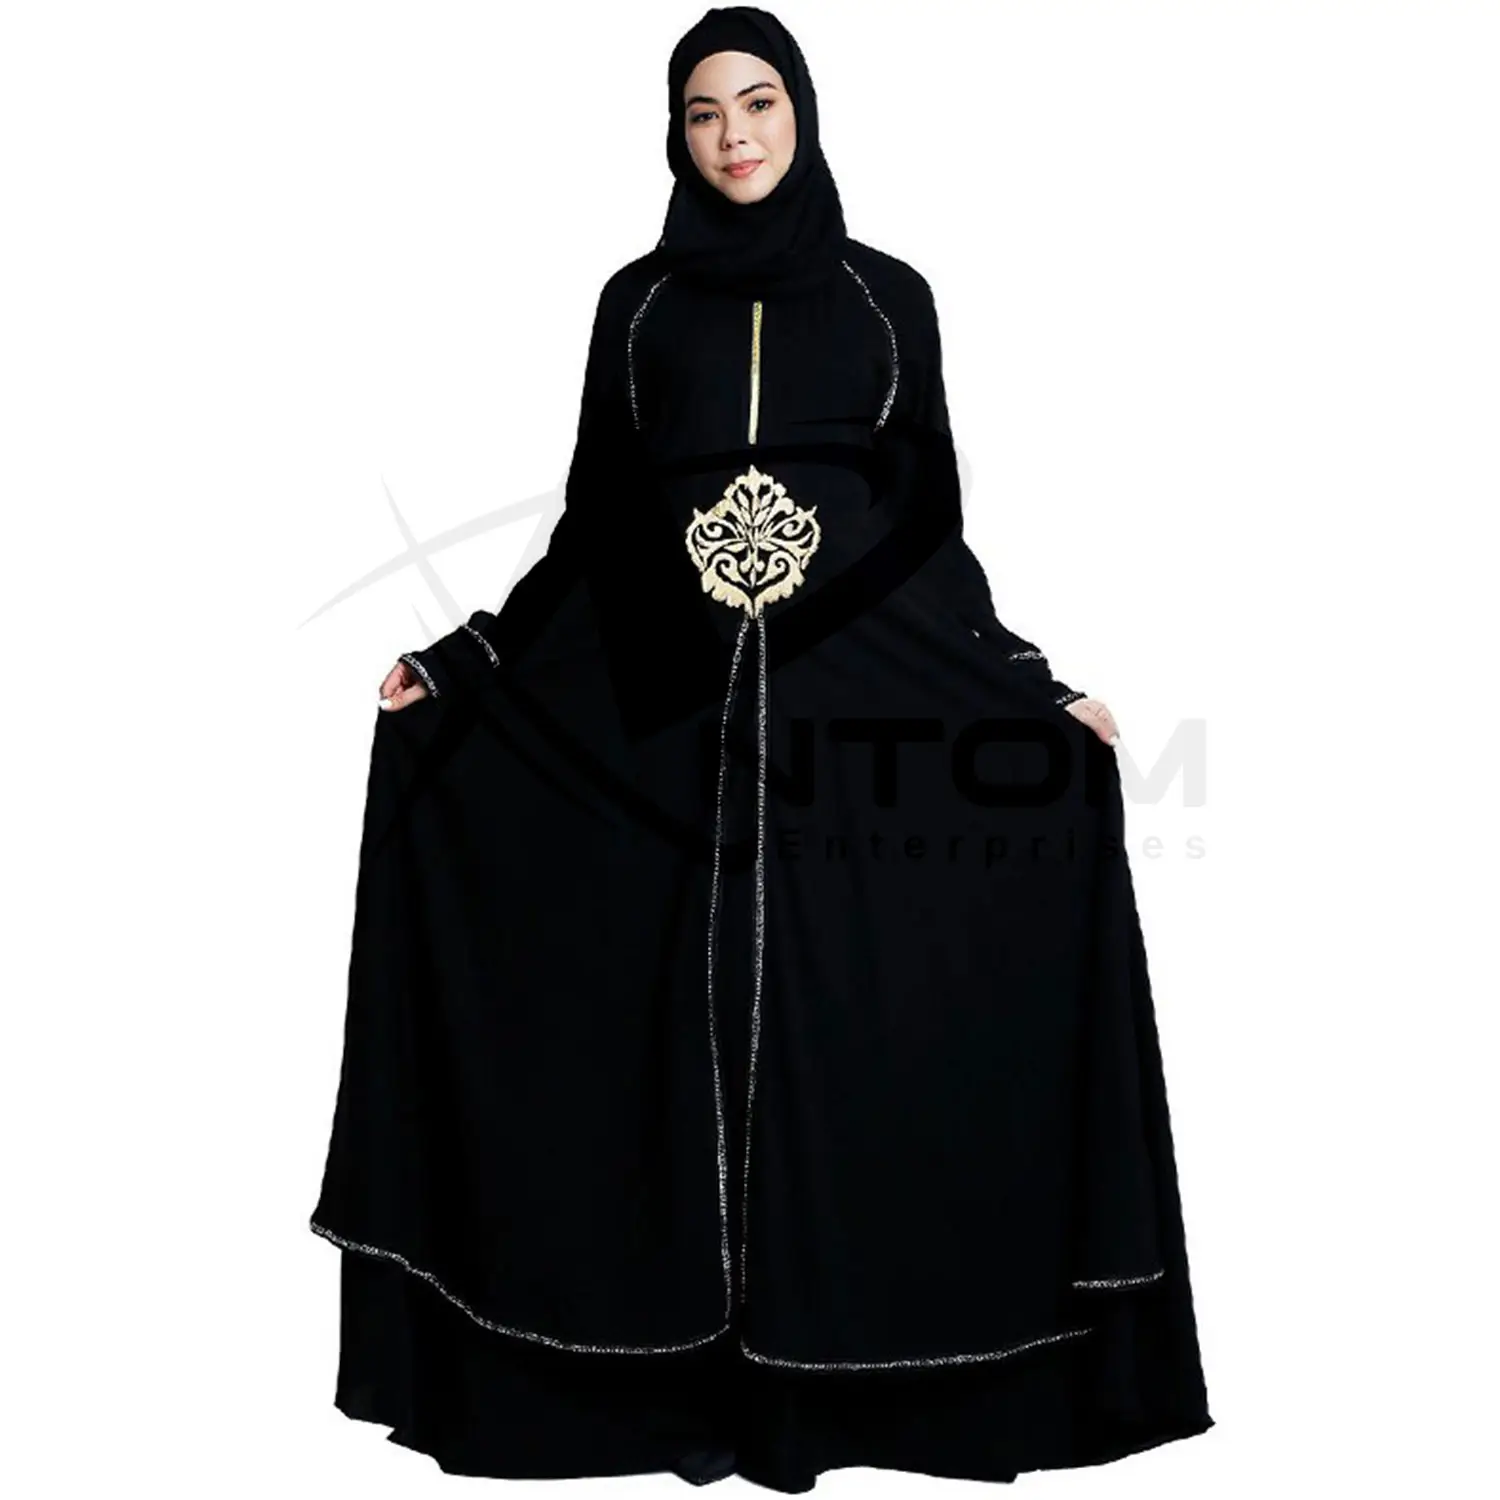 העבאיה כיסוי שמלת כולל על יקר מטליות 100% חלאל דובאי טורקיה פקיסטן הודו חלוק לילה כותנות לילה שמלה ארוג